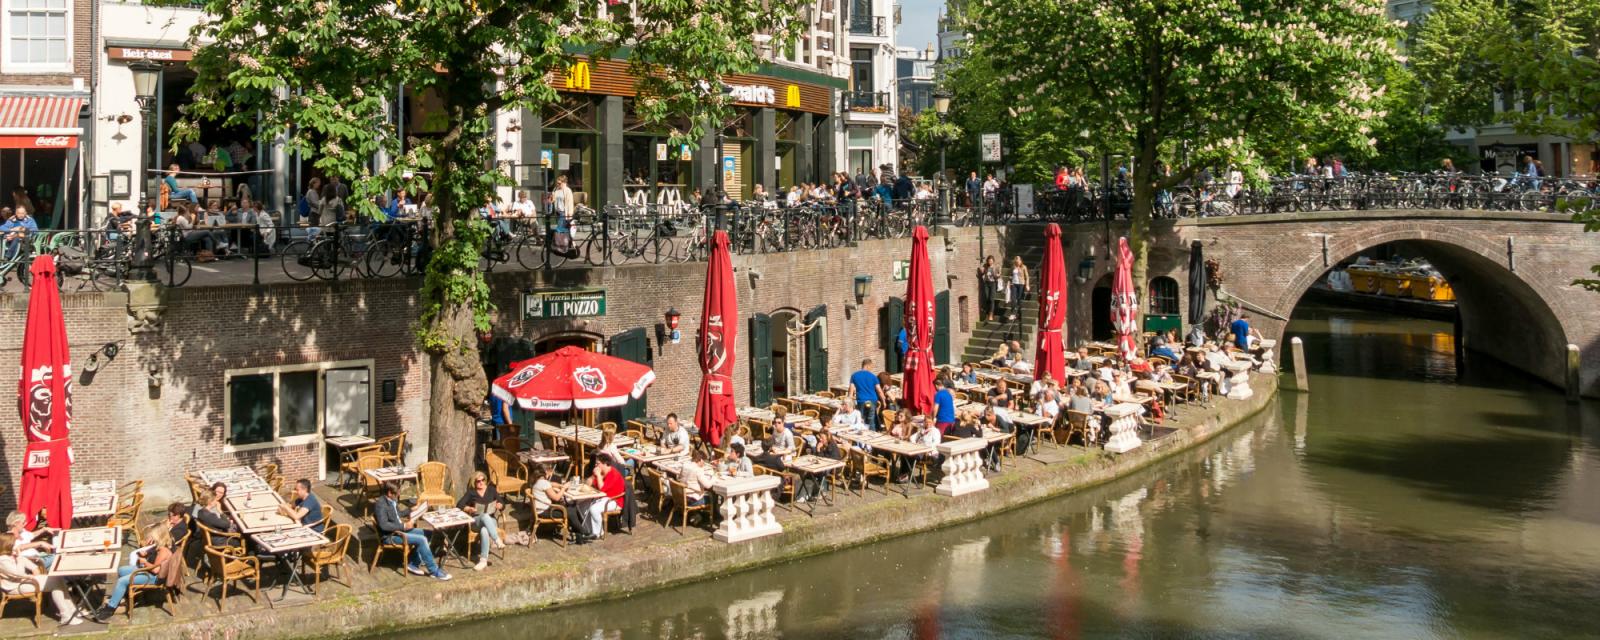 Onmisbare plekken in Utrecht | CityZapper favorites 